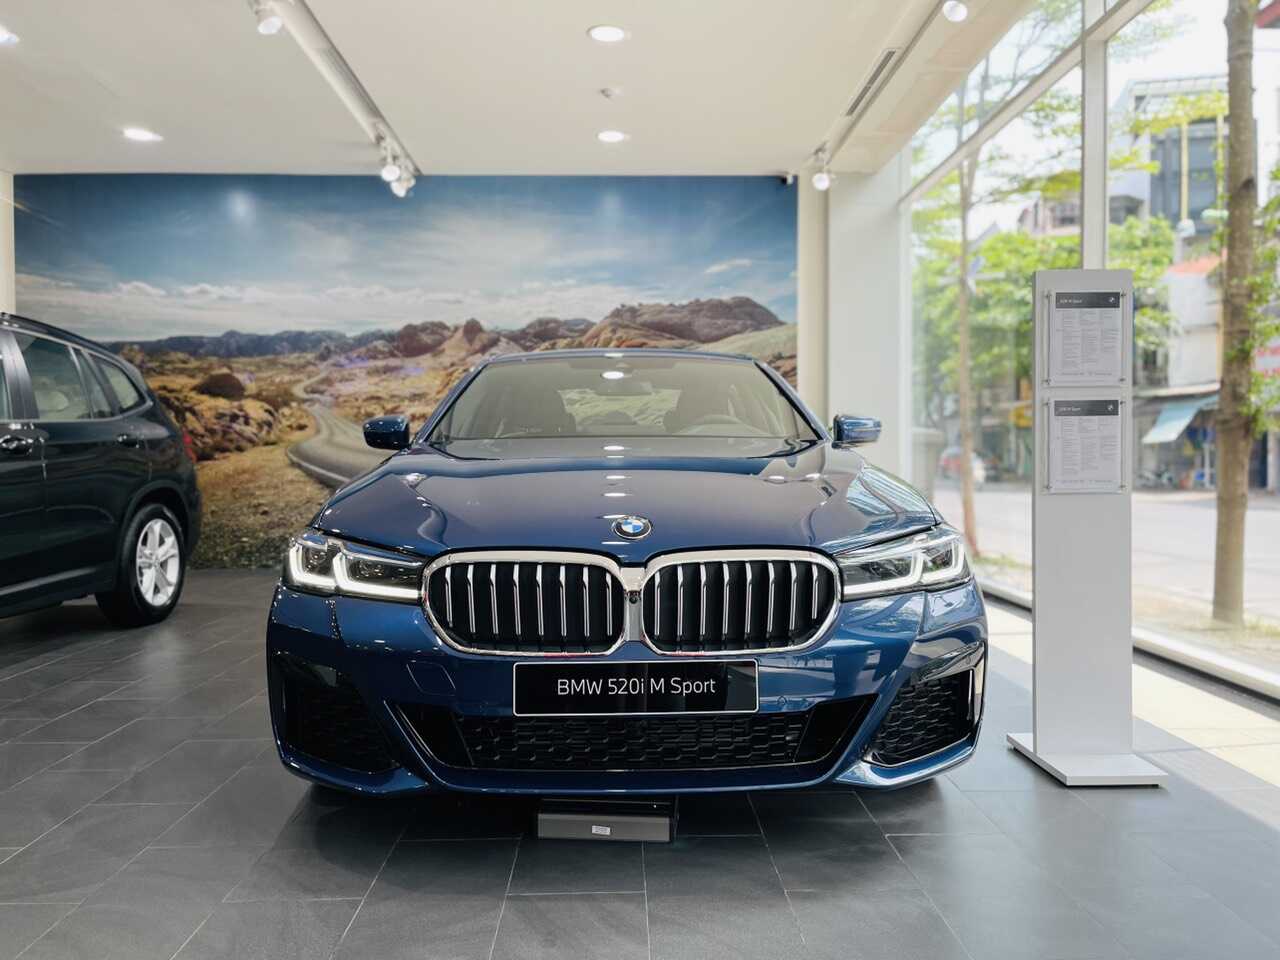 Lưới tản nhiệt và cụm đèn pha của BMW 520i M Sport 2021 màu Phytonic Blue.